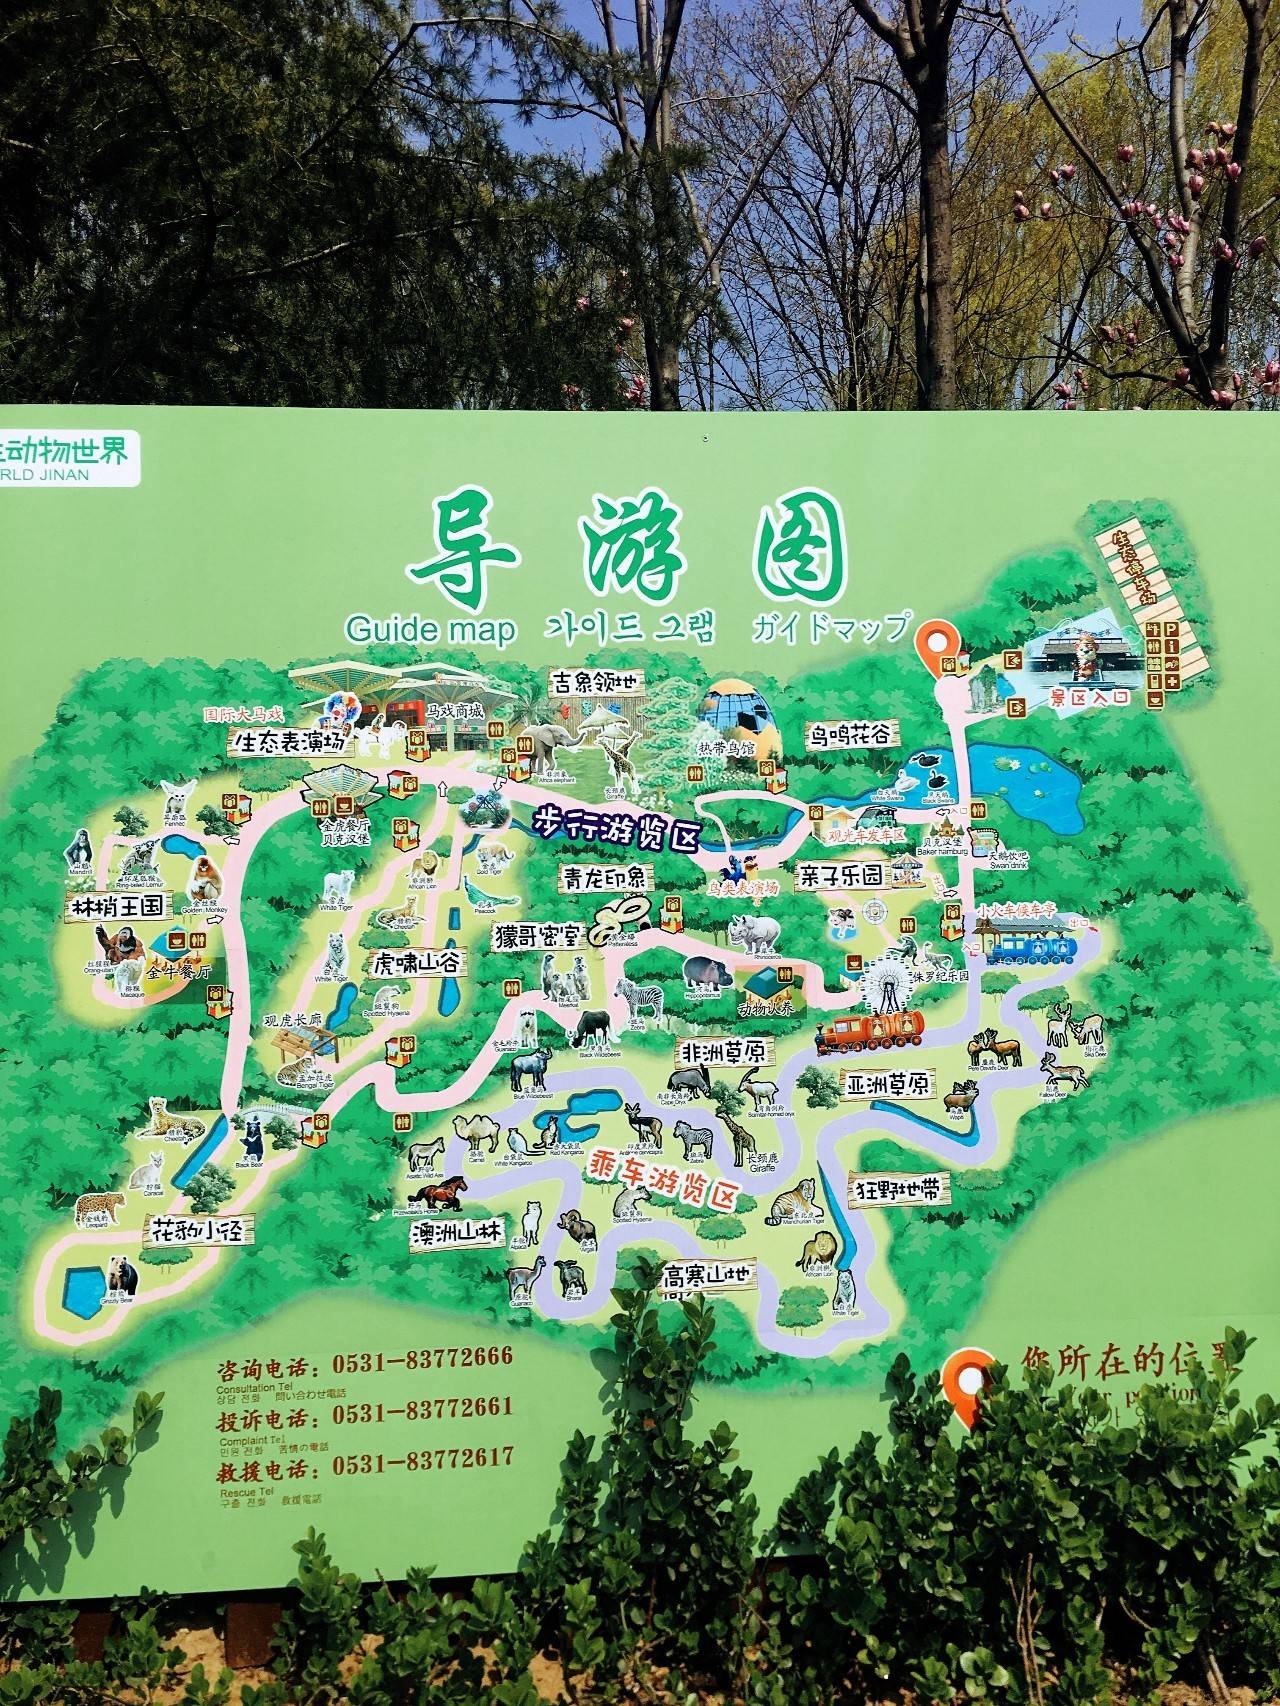 北京动物园导游图高清图片